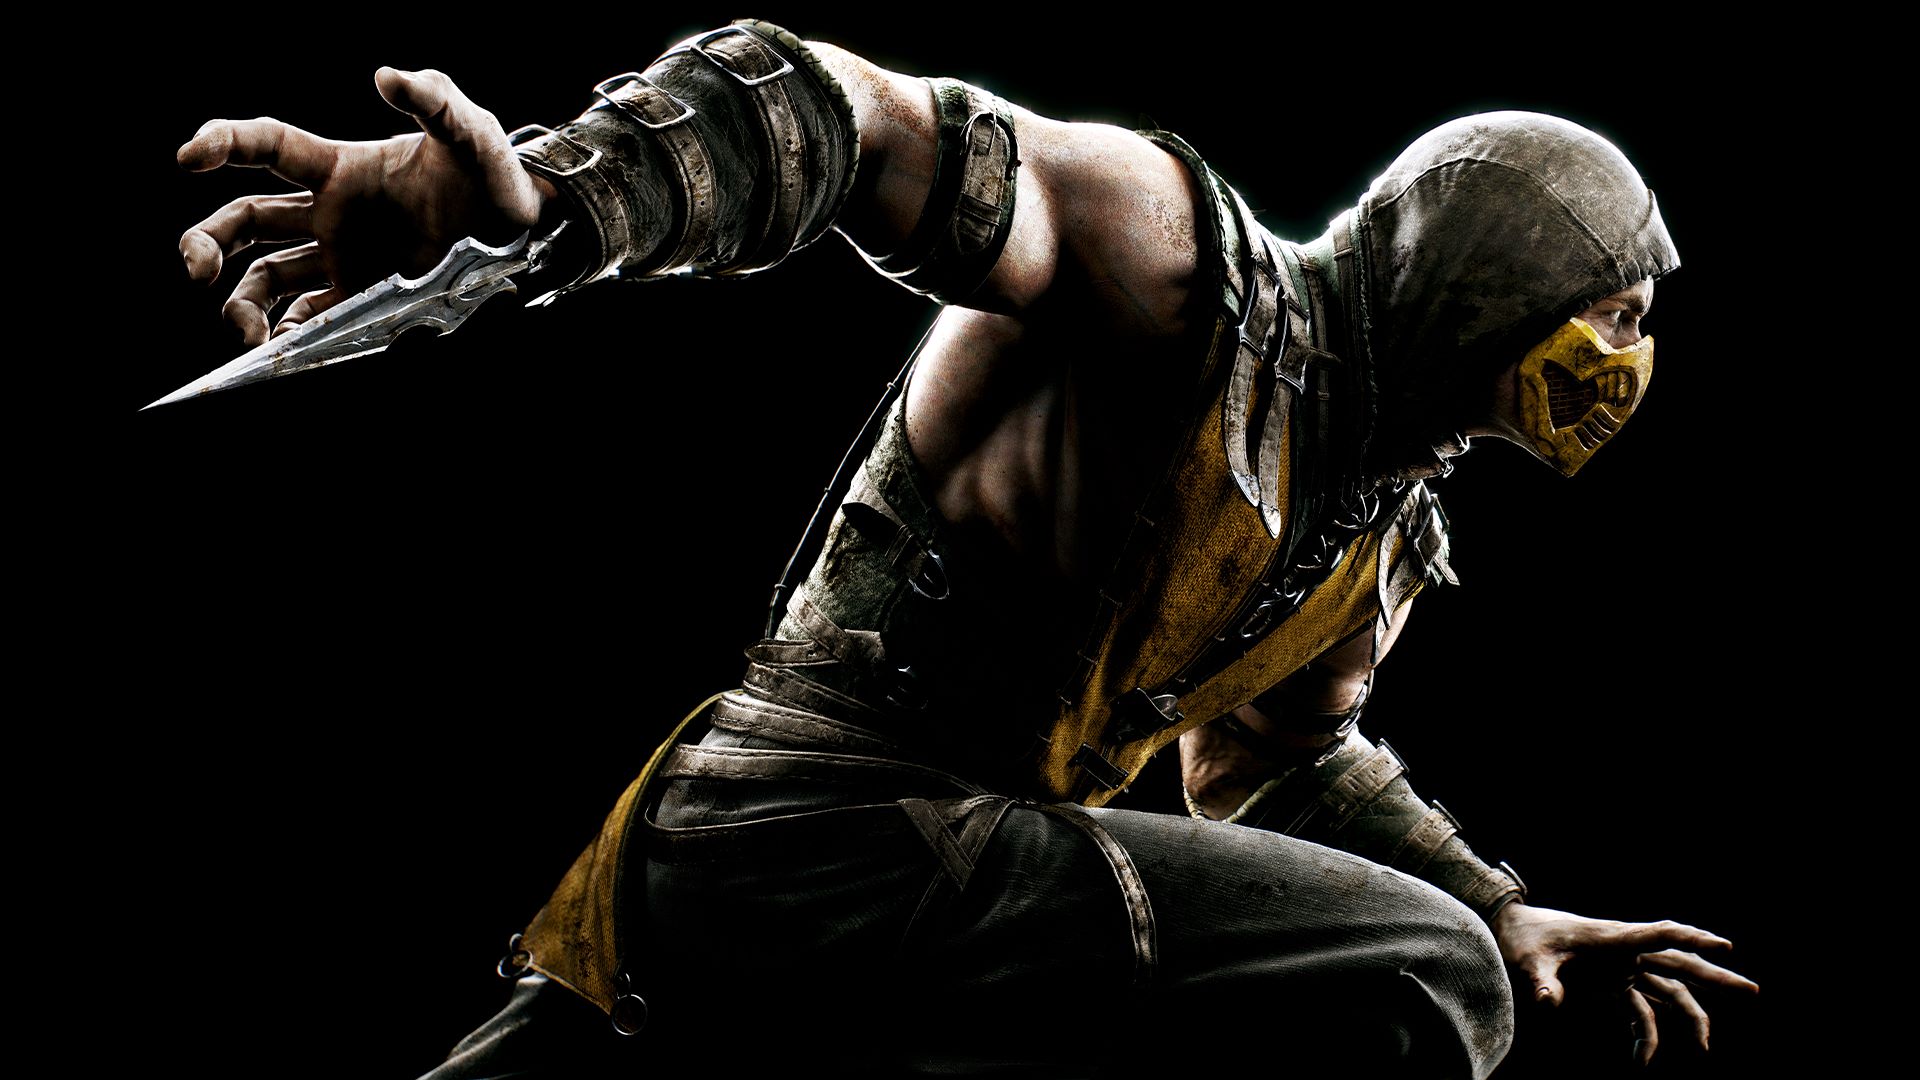 Download Dlc Mortal Kombat 9 Xbox 360 Rgh